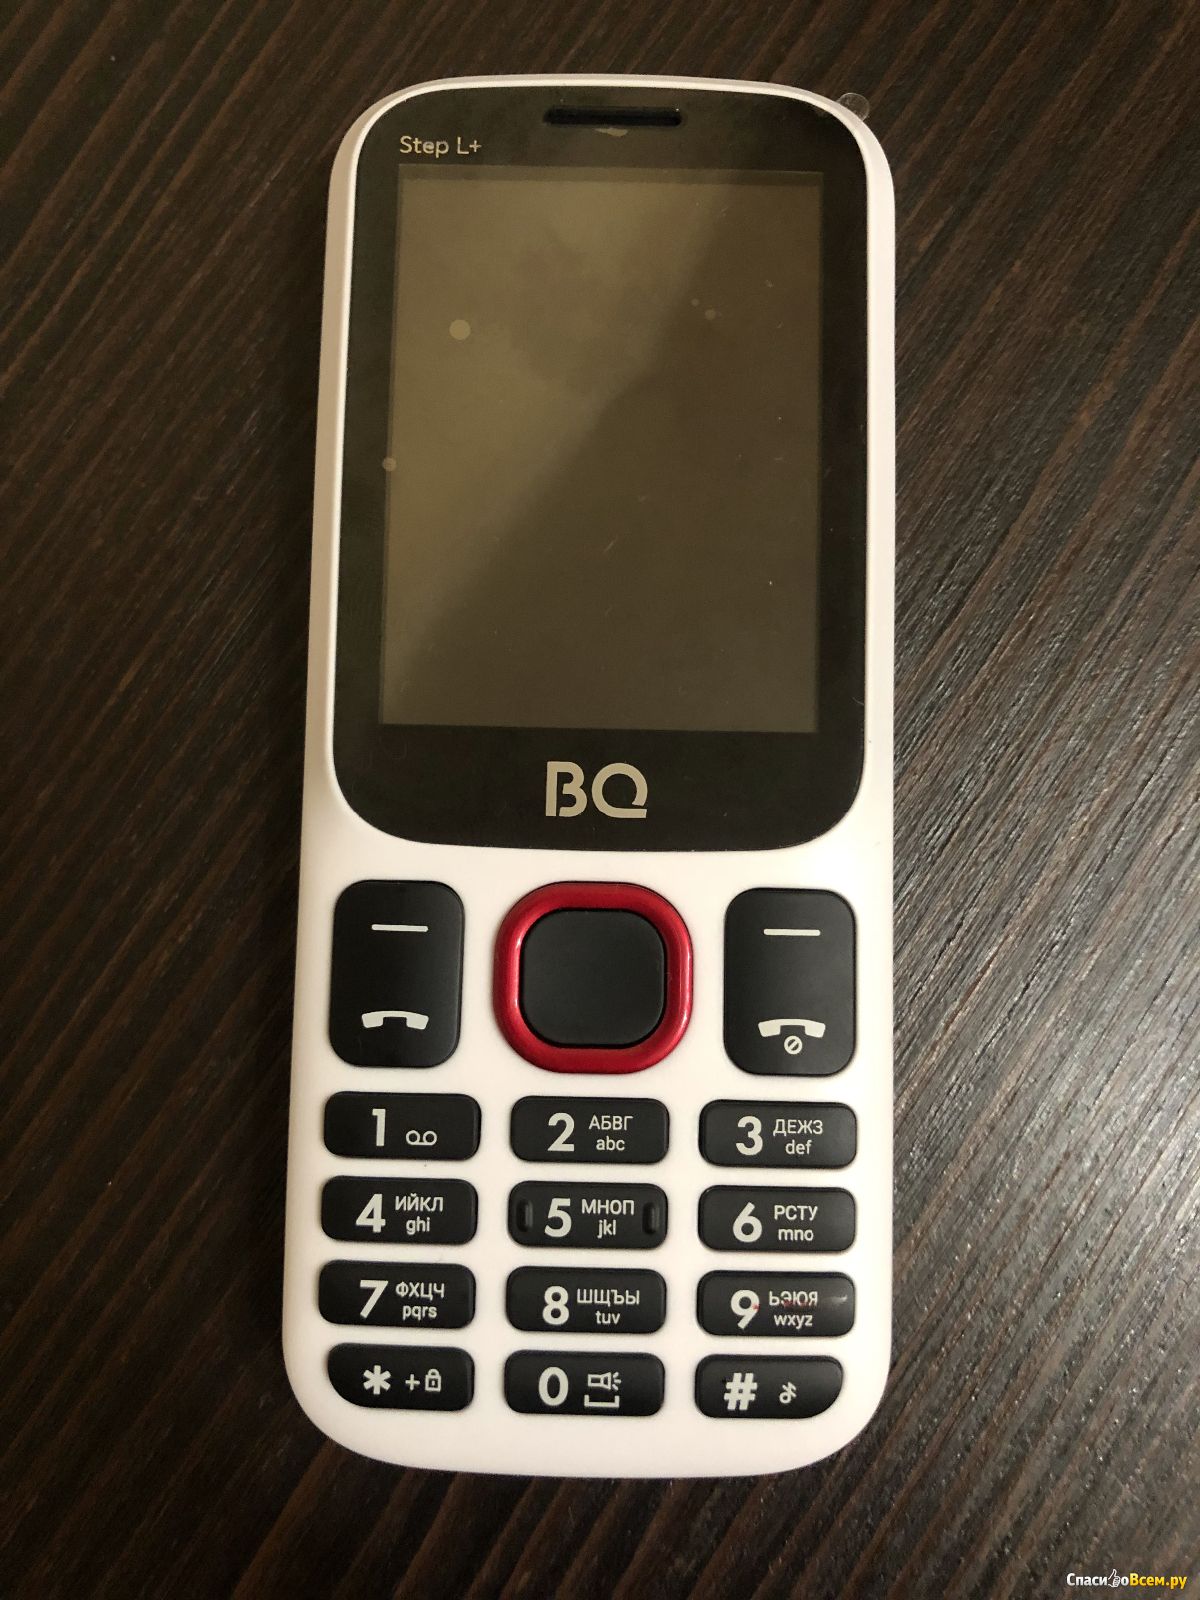 Телефон bq step. BQ 2440 Step l+ White Red. BQ 2440. BQ 2440 Step l. BQ модель: 2440 Step l+.